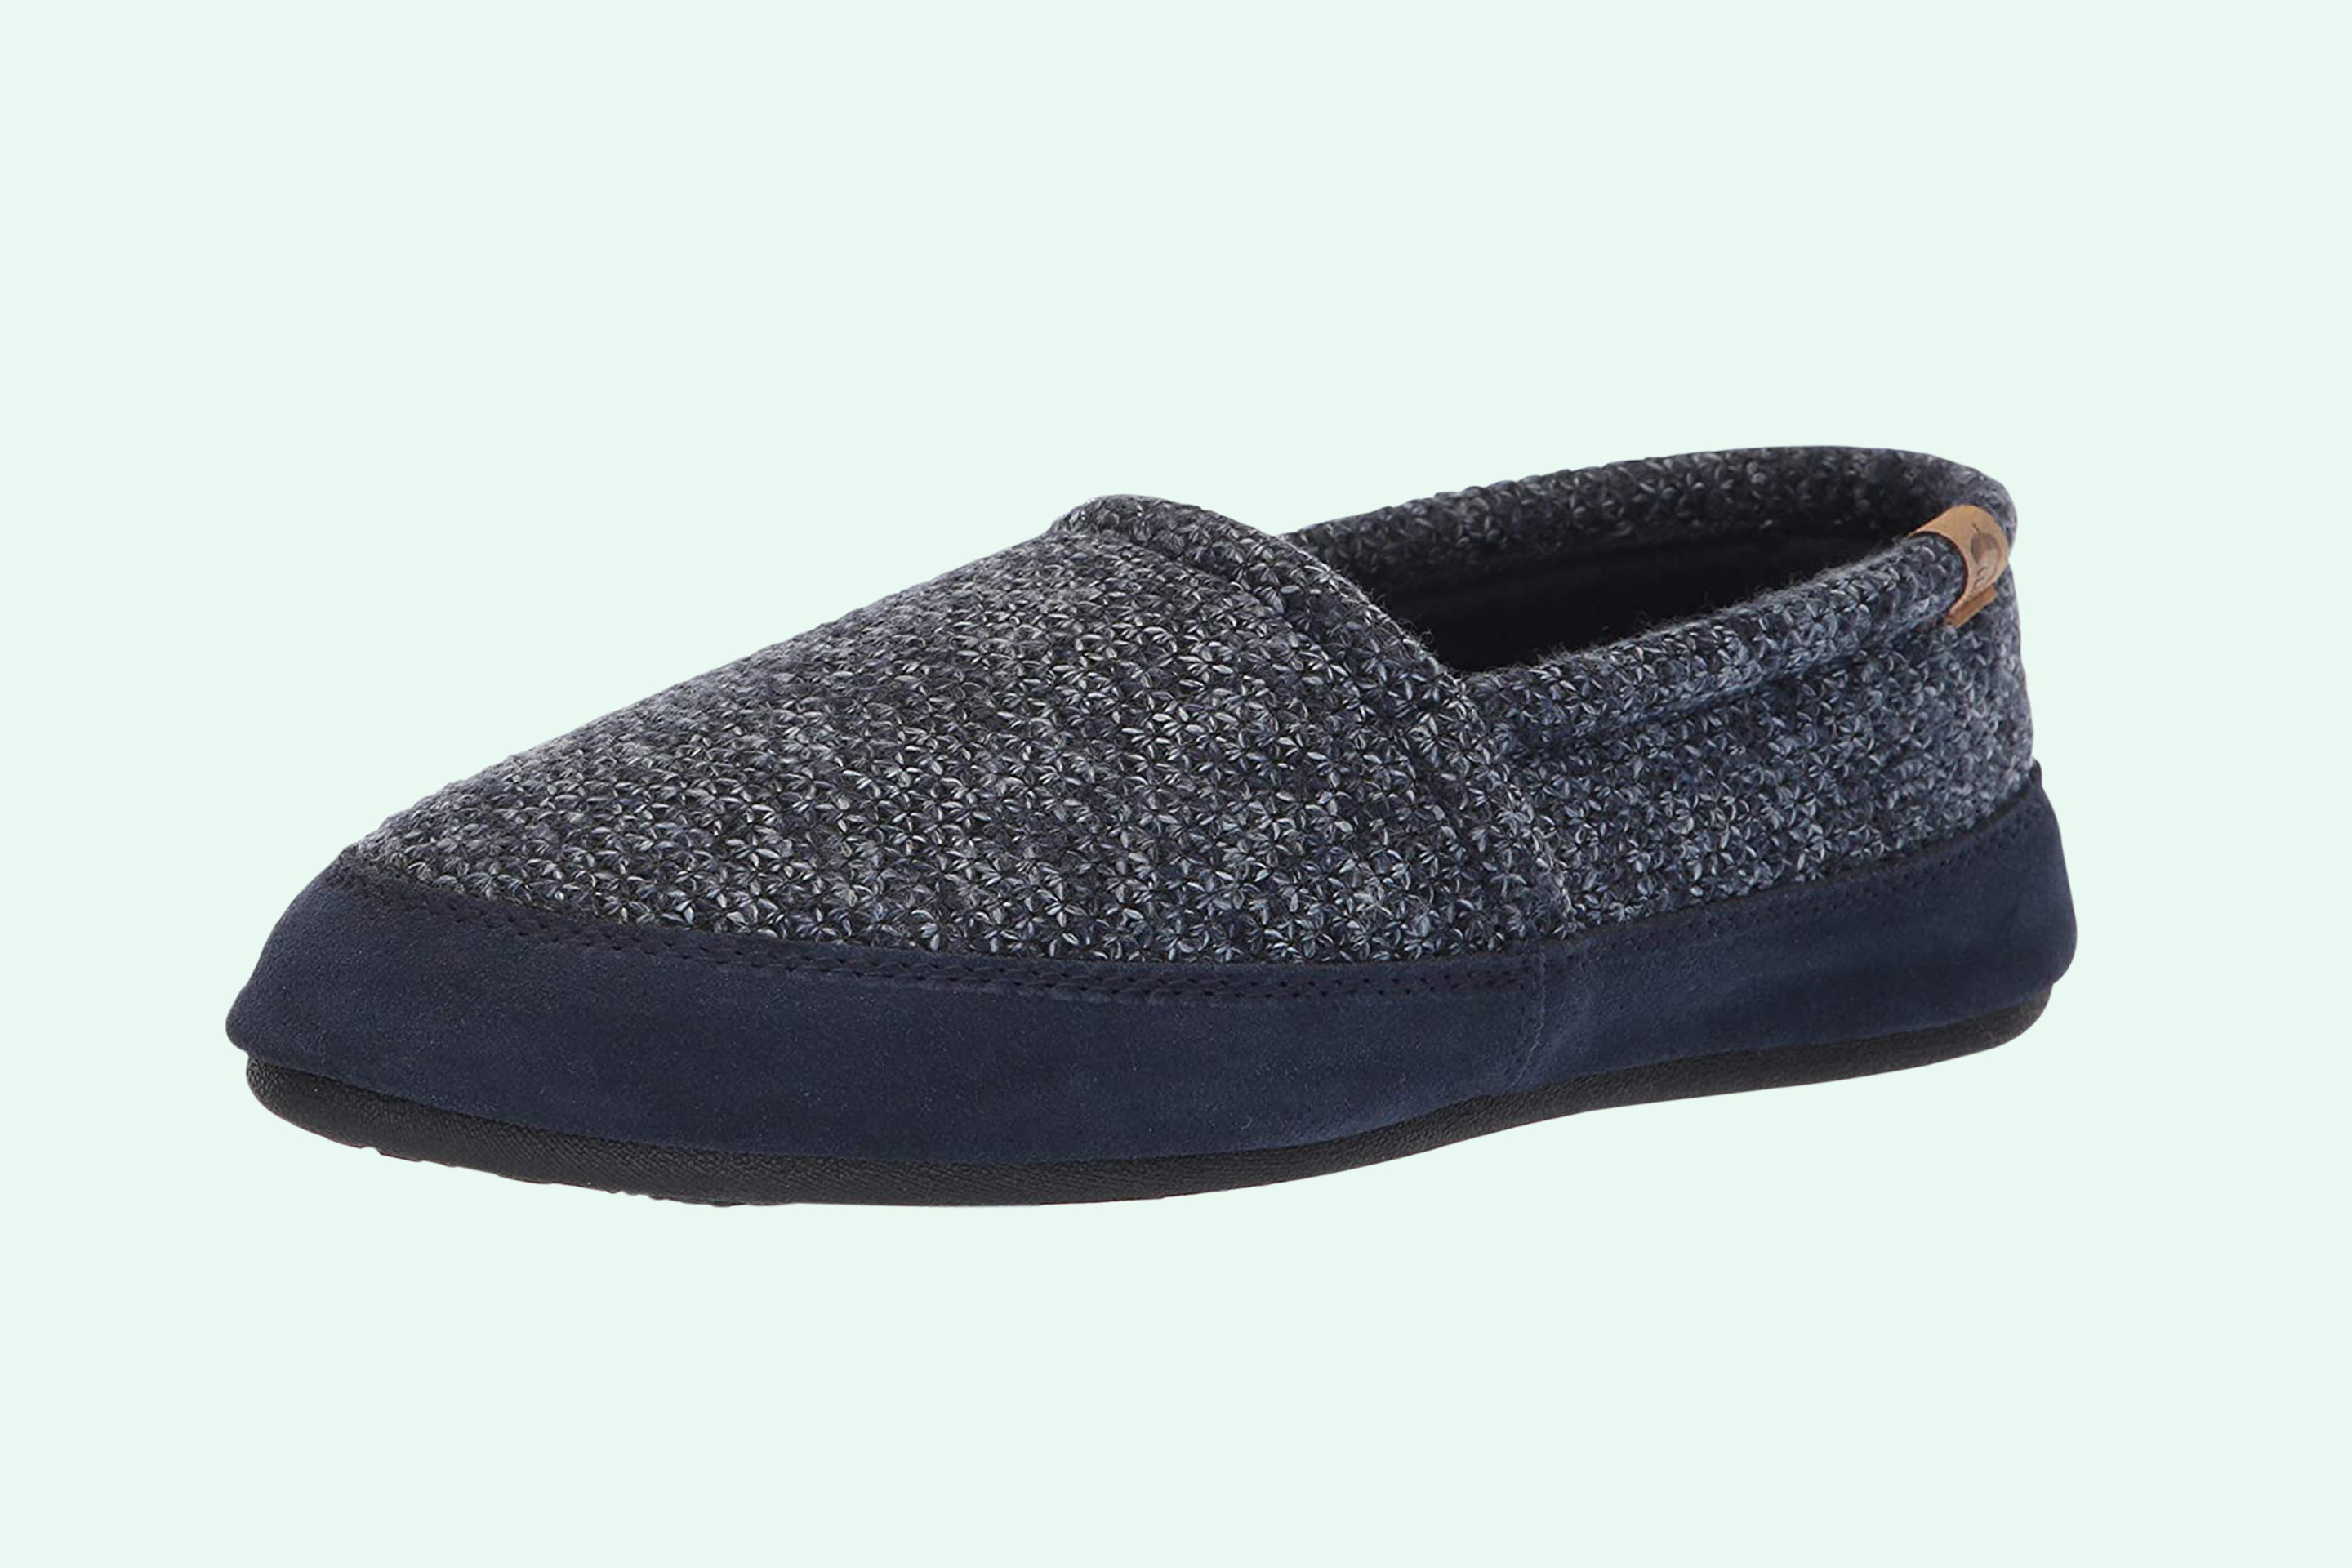 warmest slippers for cold feet men's